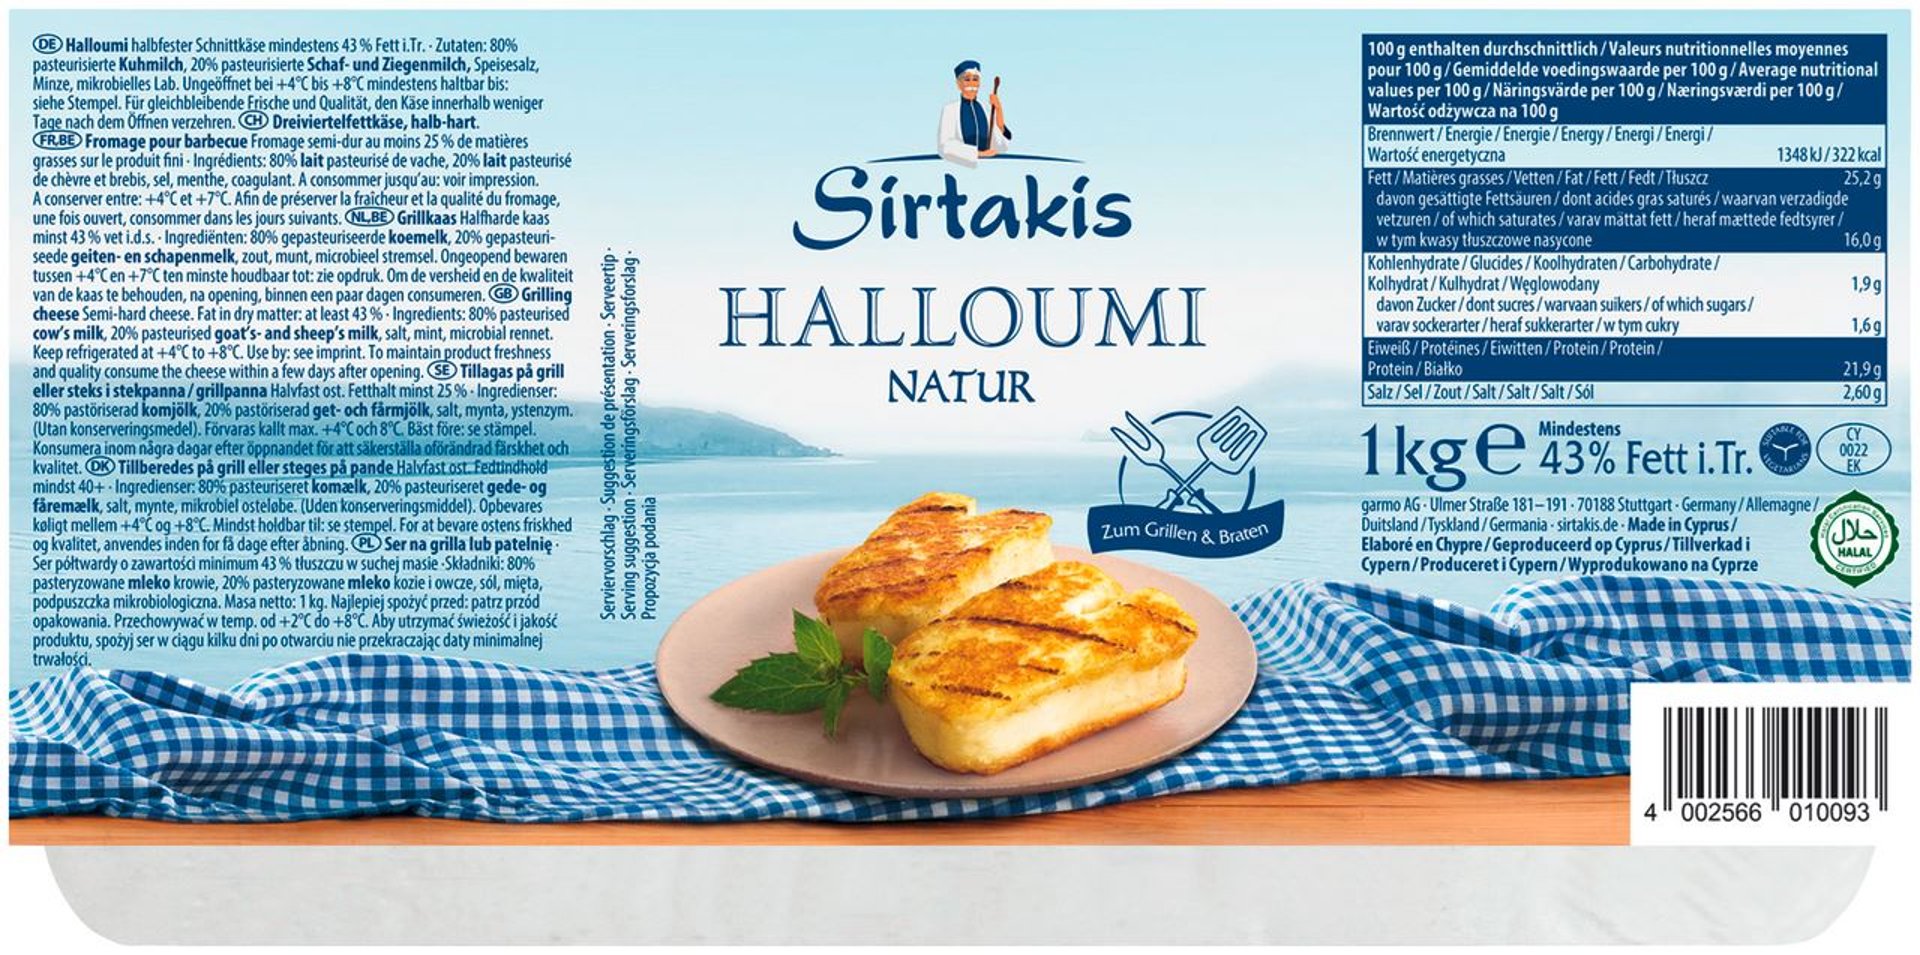 Sirtakis - Halloumi halbfester Schnittkäse aus Zypern, 43 % Fett i. Tr. 1 kg